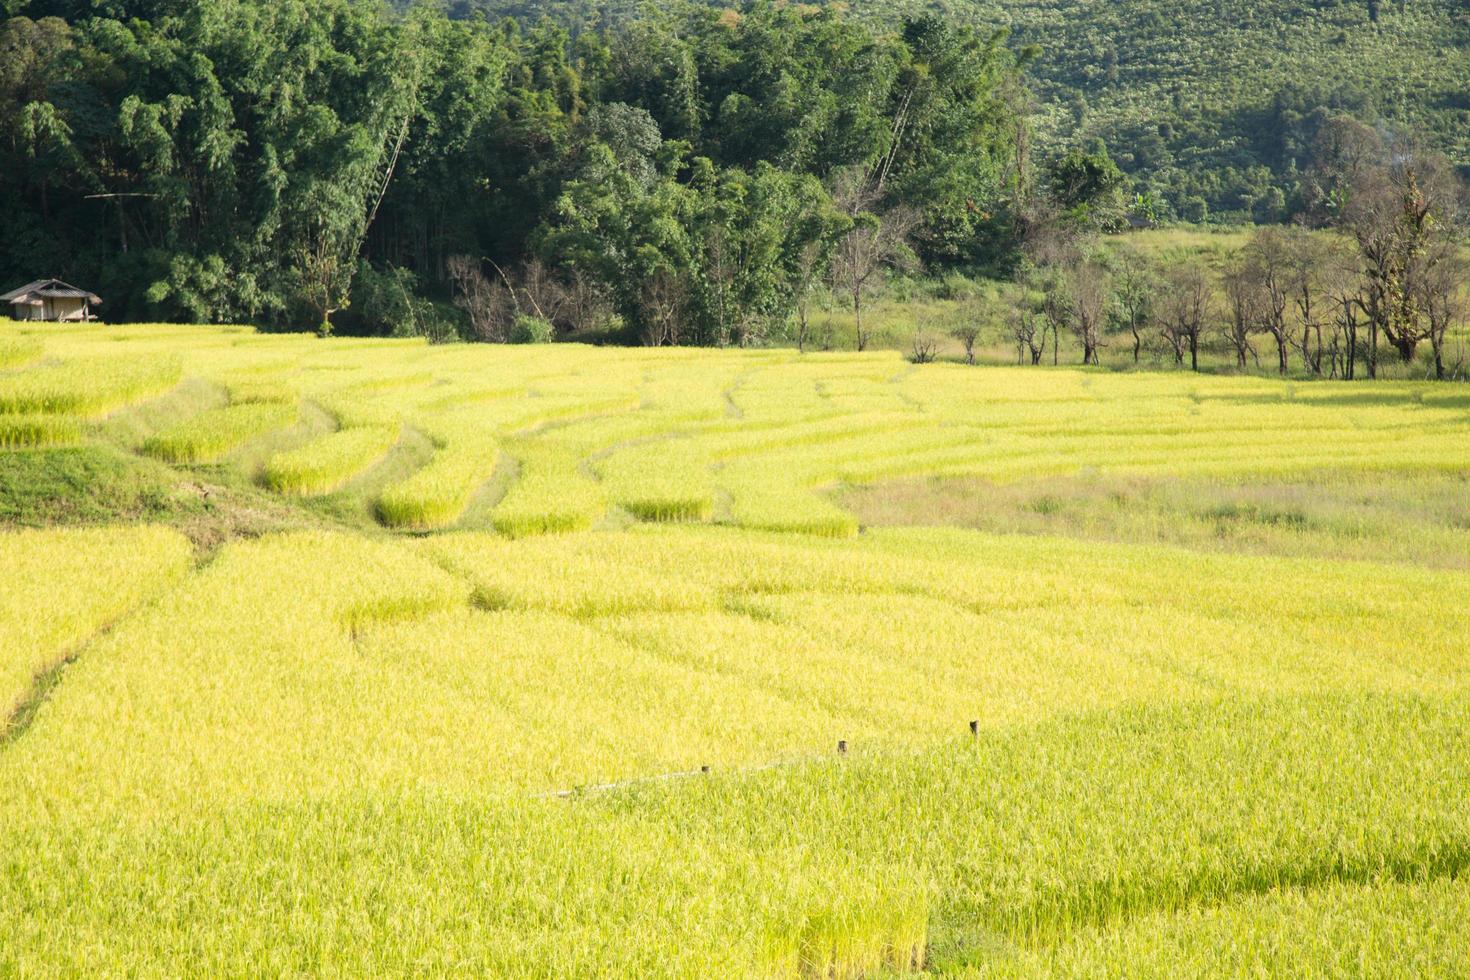 fattoria di riso sulla montagna in thailandia foto